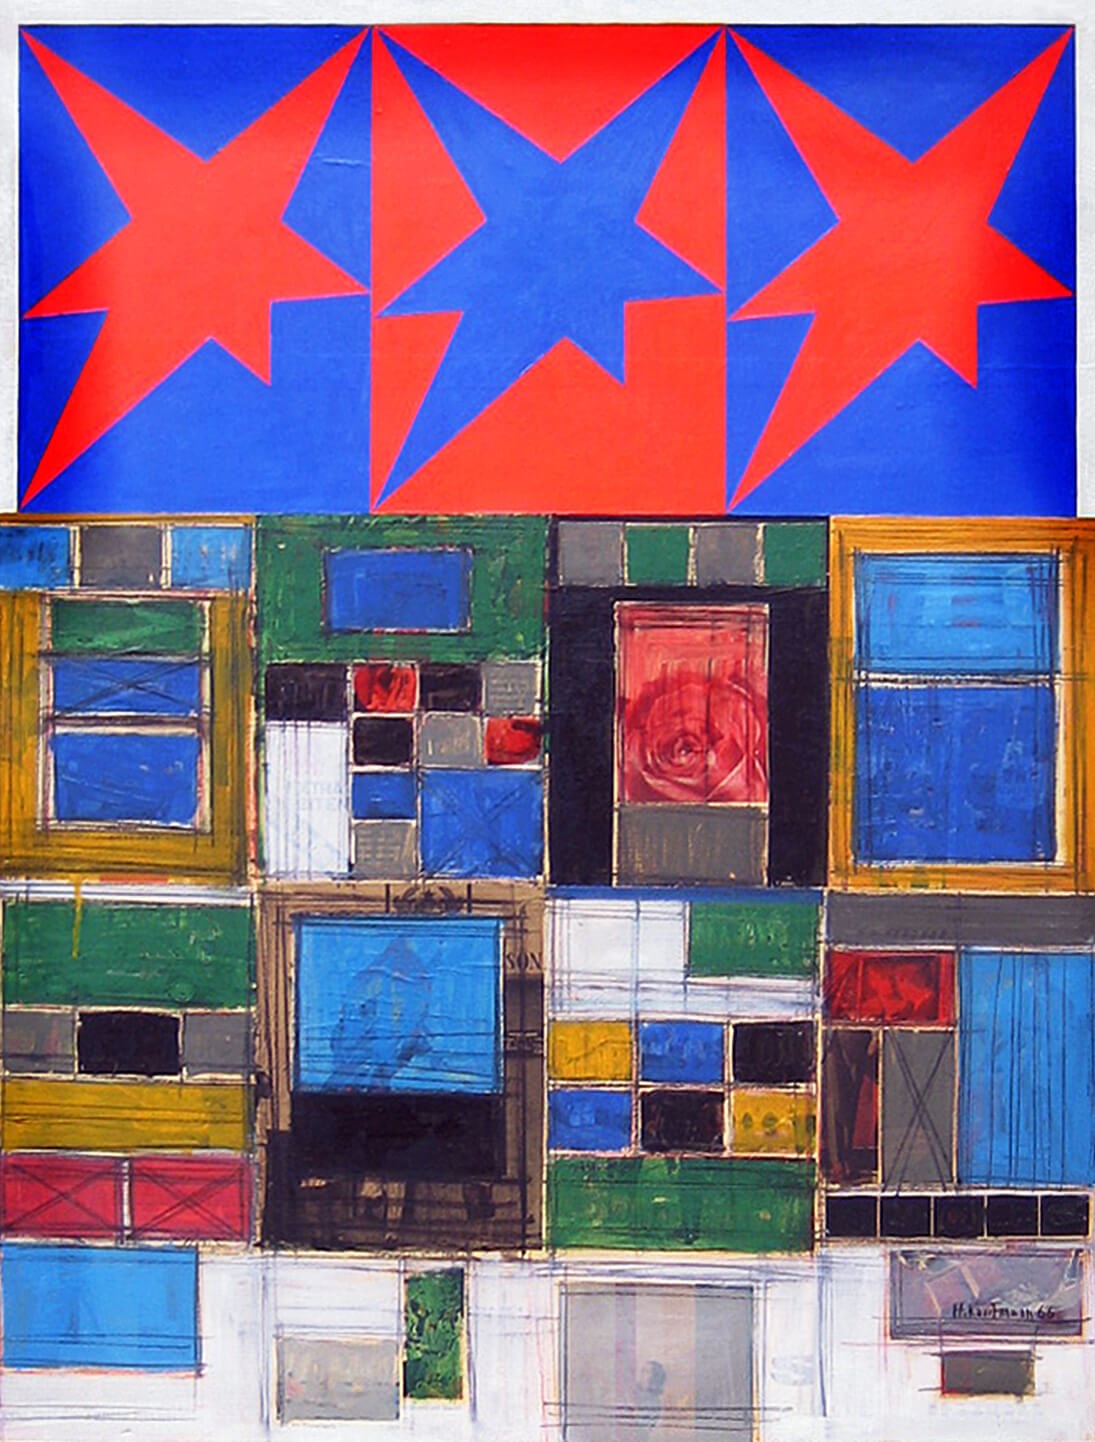 Herbert Kaufmann, Three Stars III, 1966, Mischtechnik, Collage auf Leinwand, 130 x 100 cm